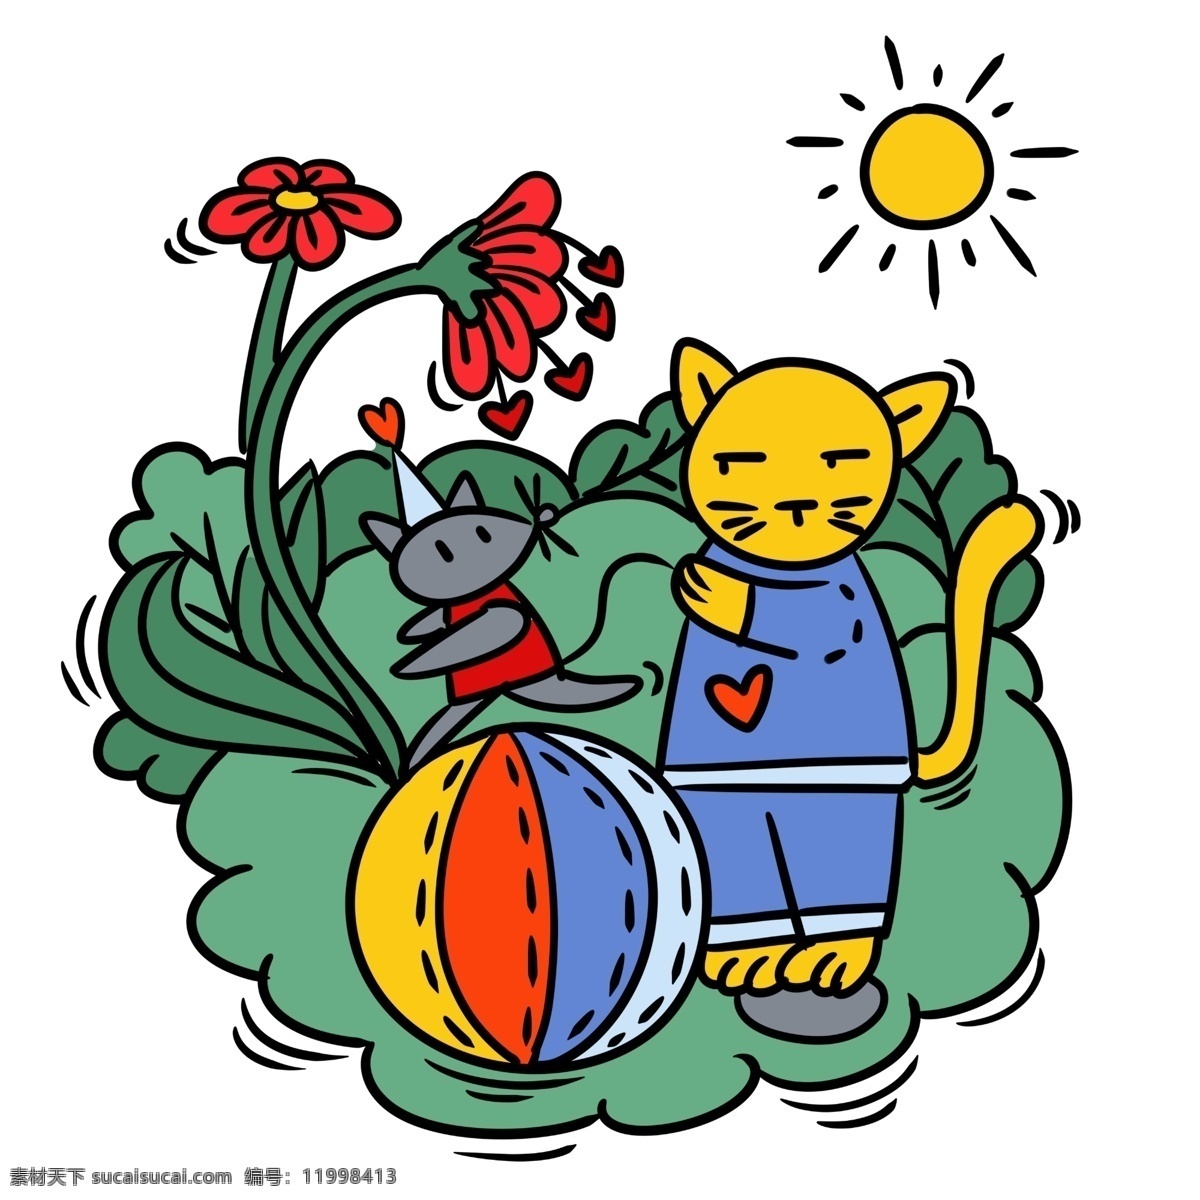 手绘 卡通 可爱 梦幻 童话 猫和老鼠 矢量 免抠 皮球 太阳 树叶 草地 儿童故事 花朵